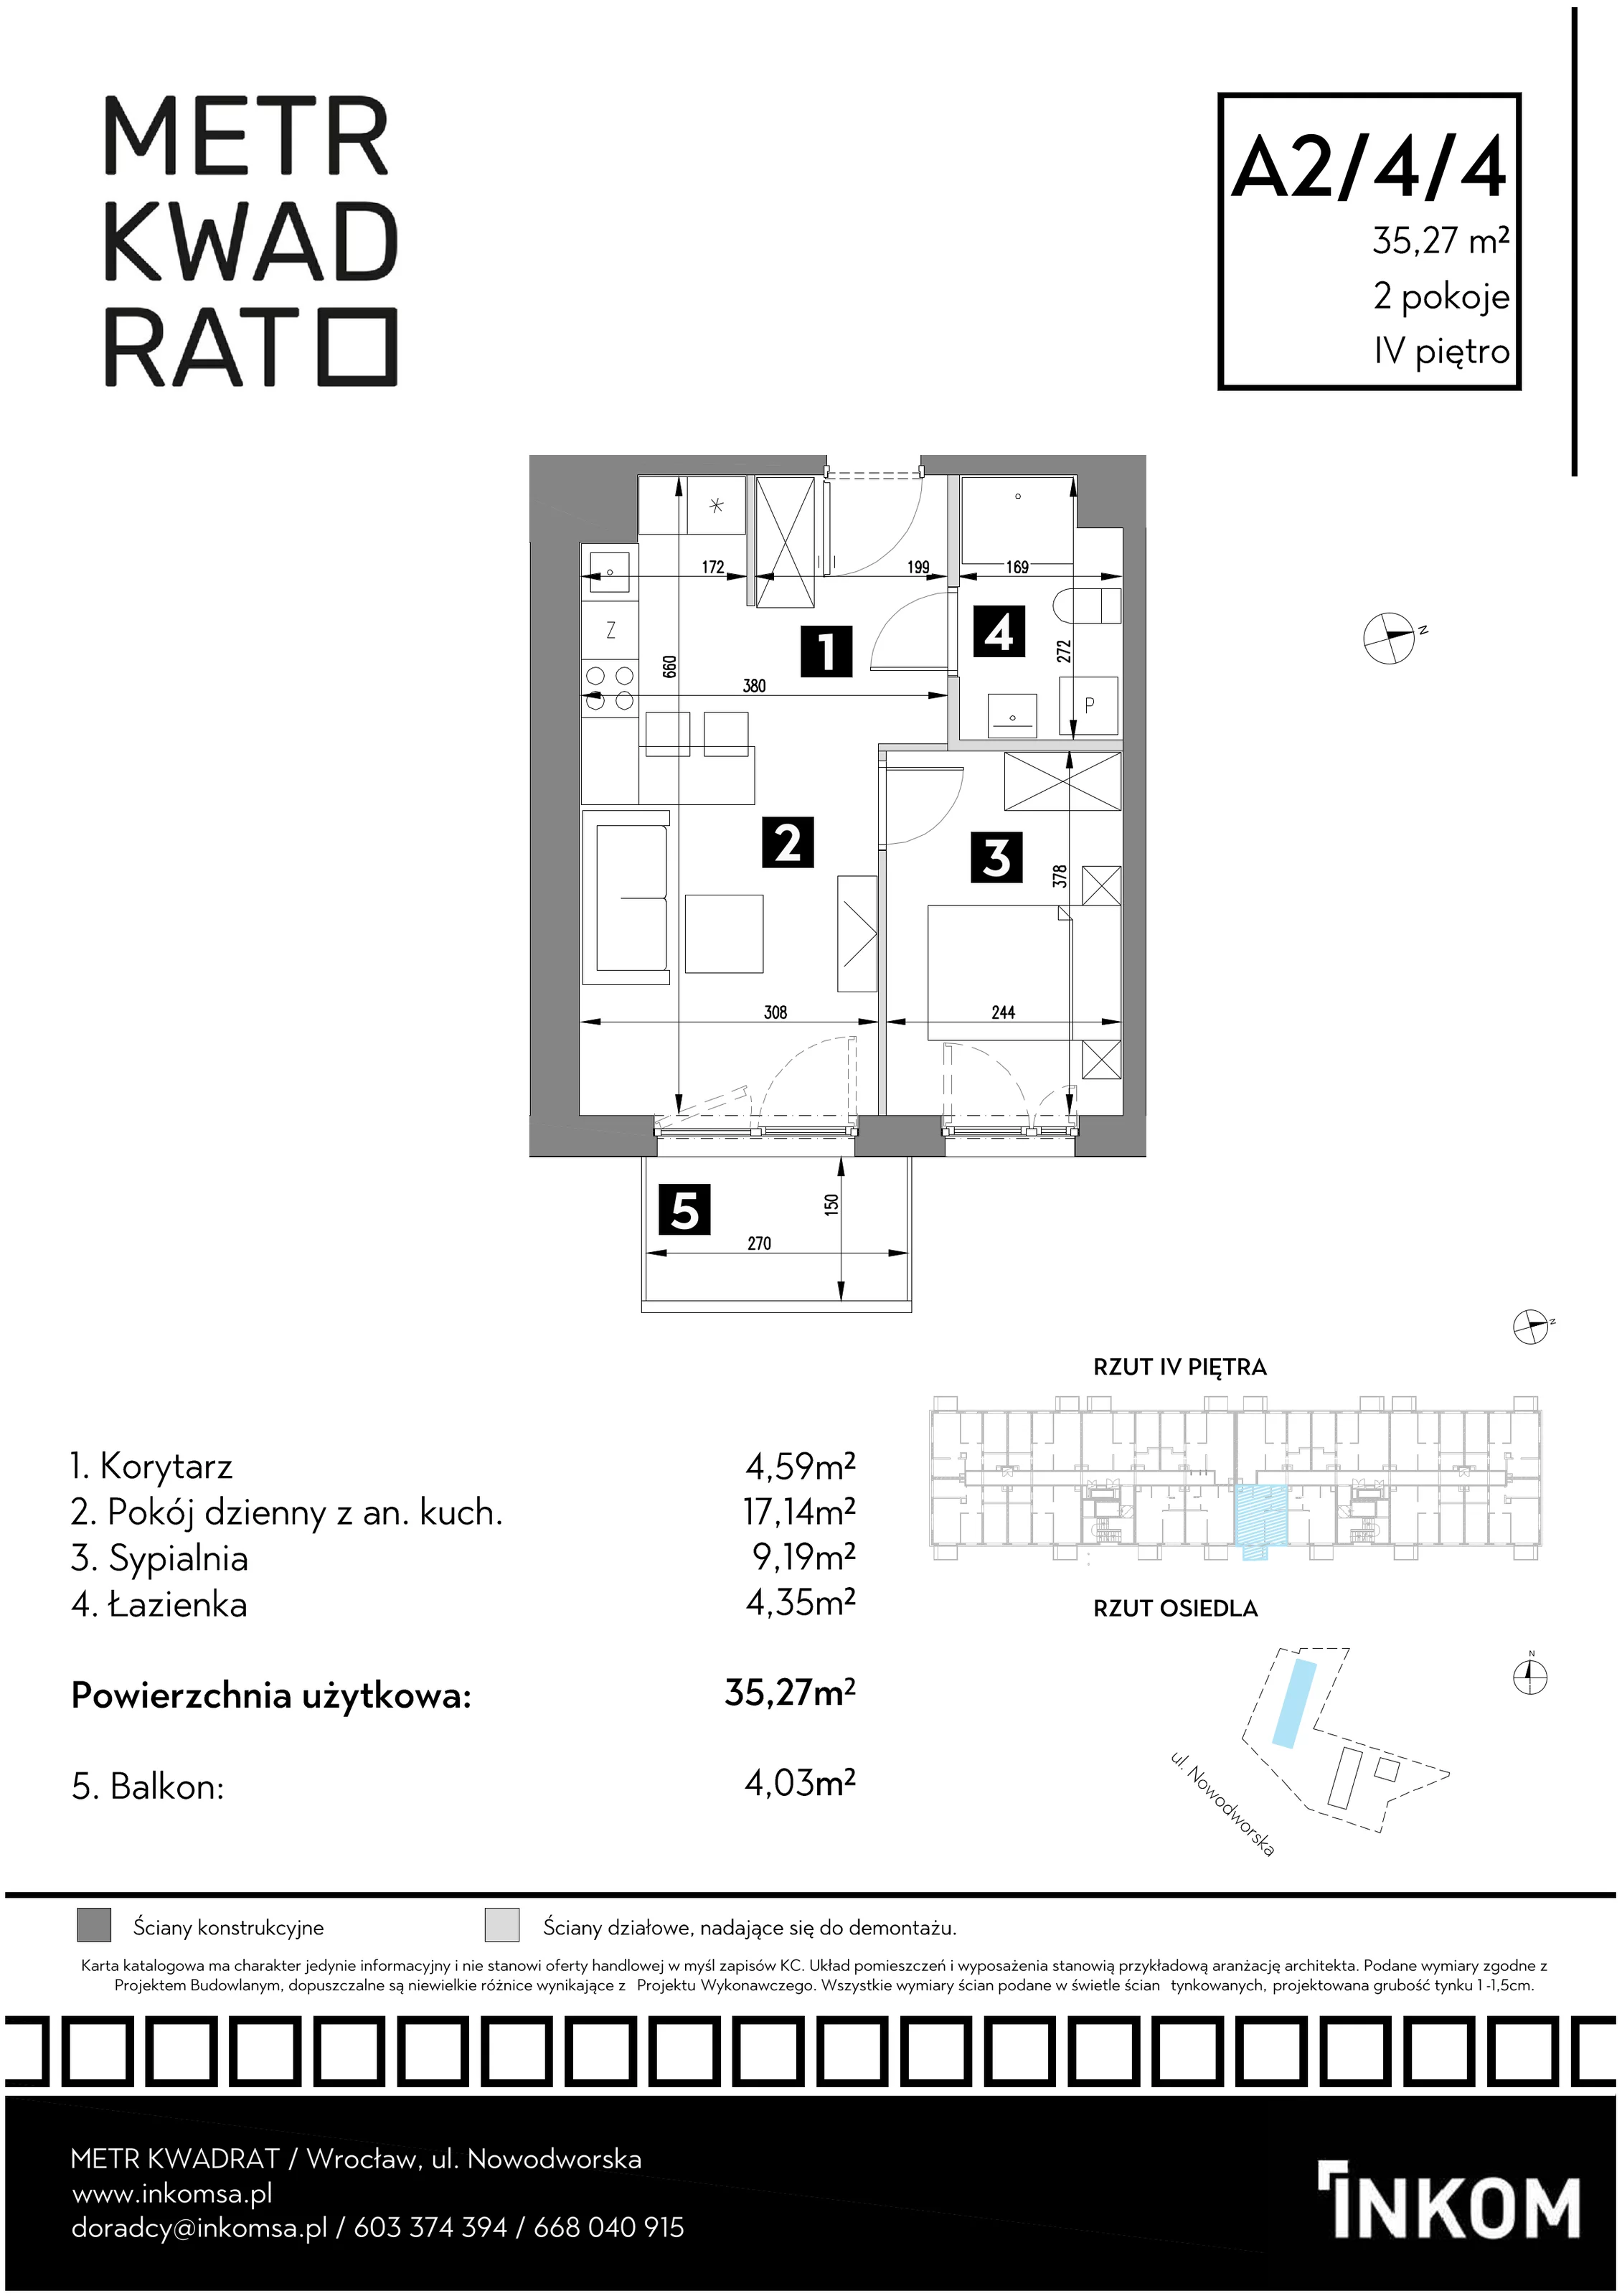 Mieszkanie 35,27 m², piętro 4, oferta nr A2/4/4, Metr Kwadrat, Wrocław, Nowy Dwór, ul. Nowodworska 17B